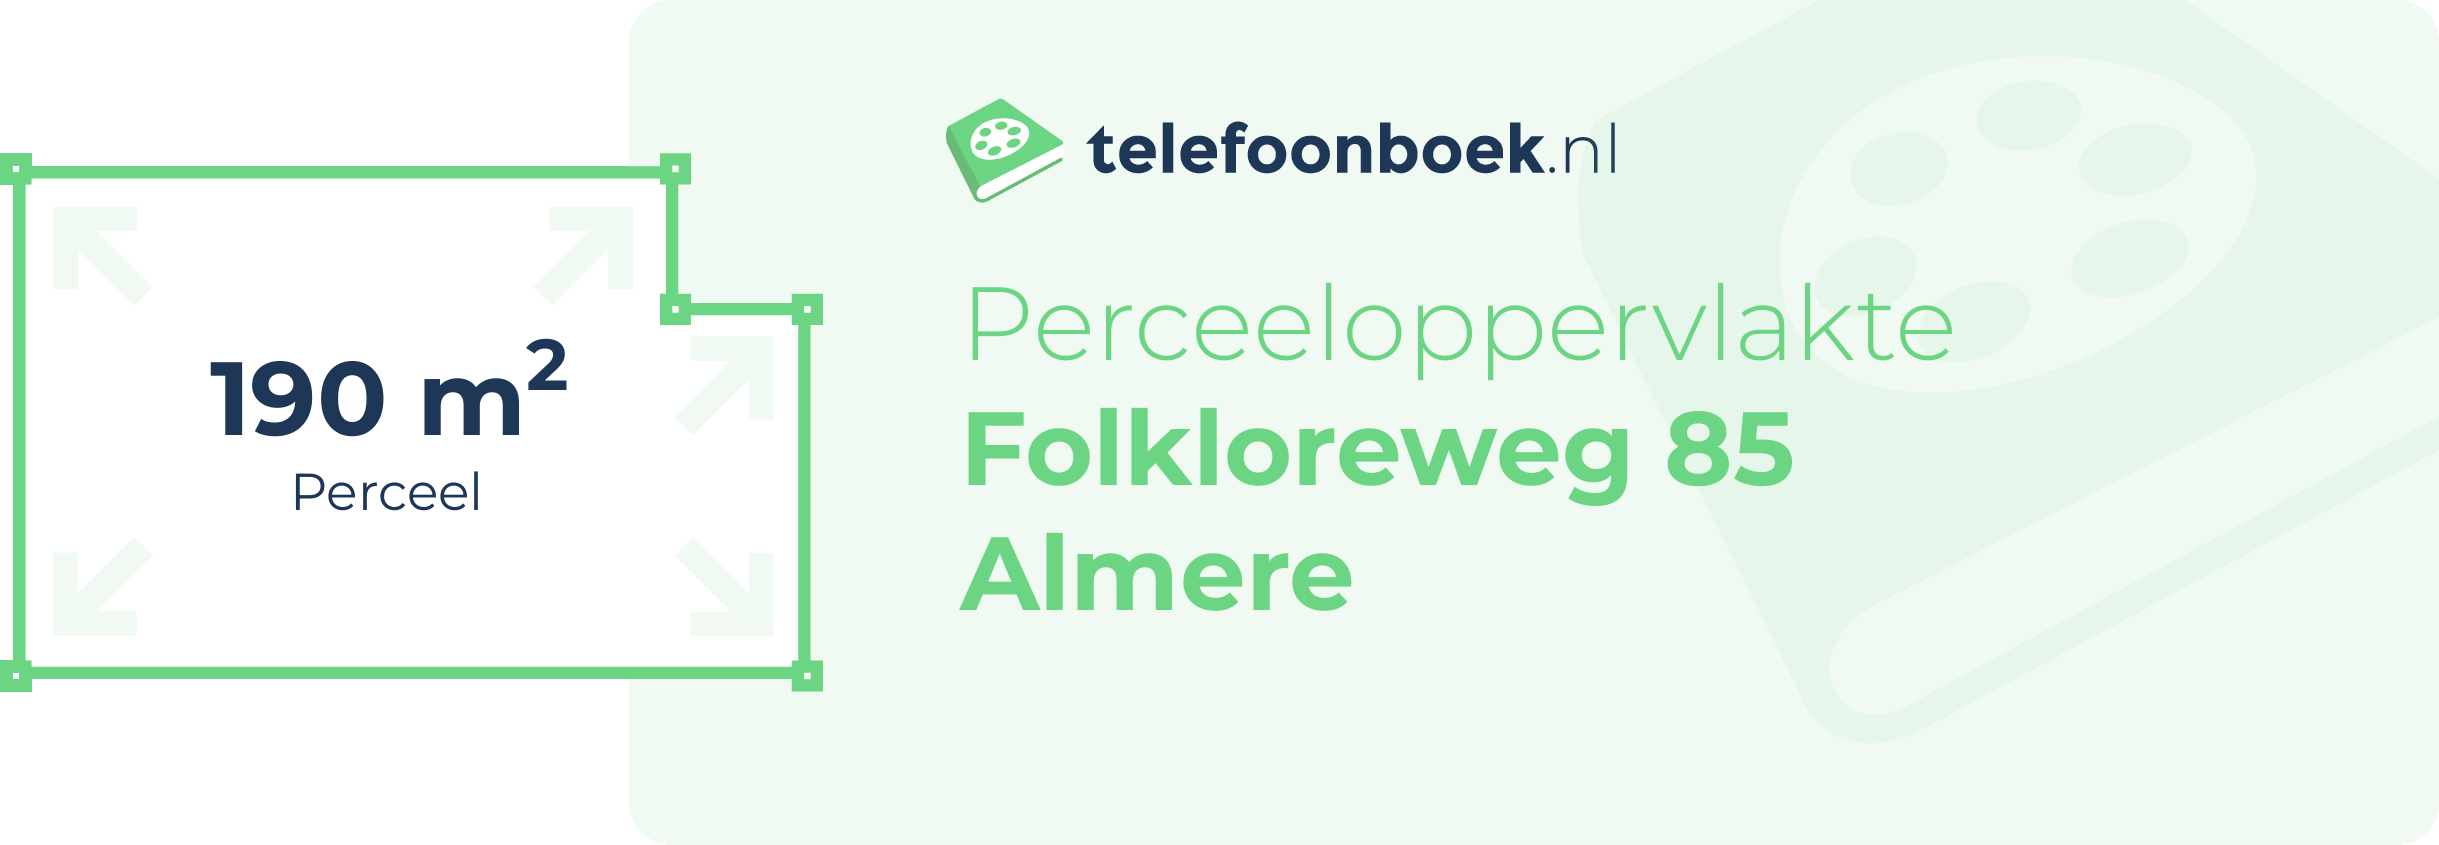 Perceeloppervlakte Folkloreweg 85 Almere